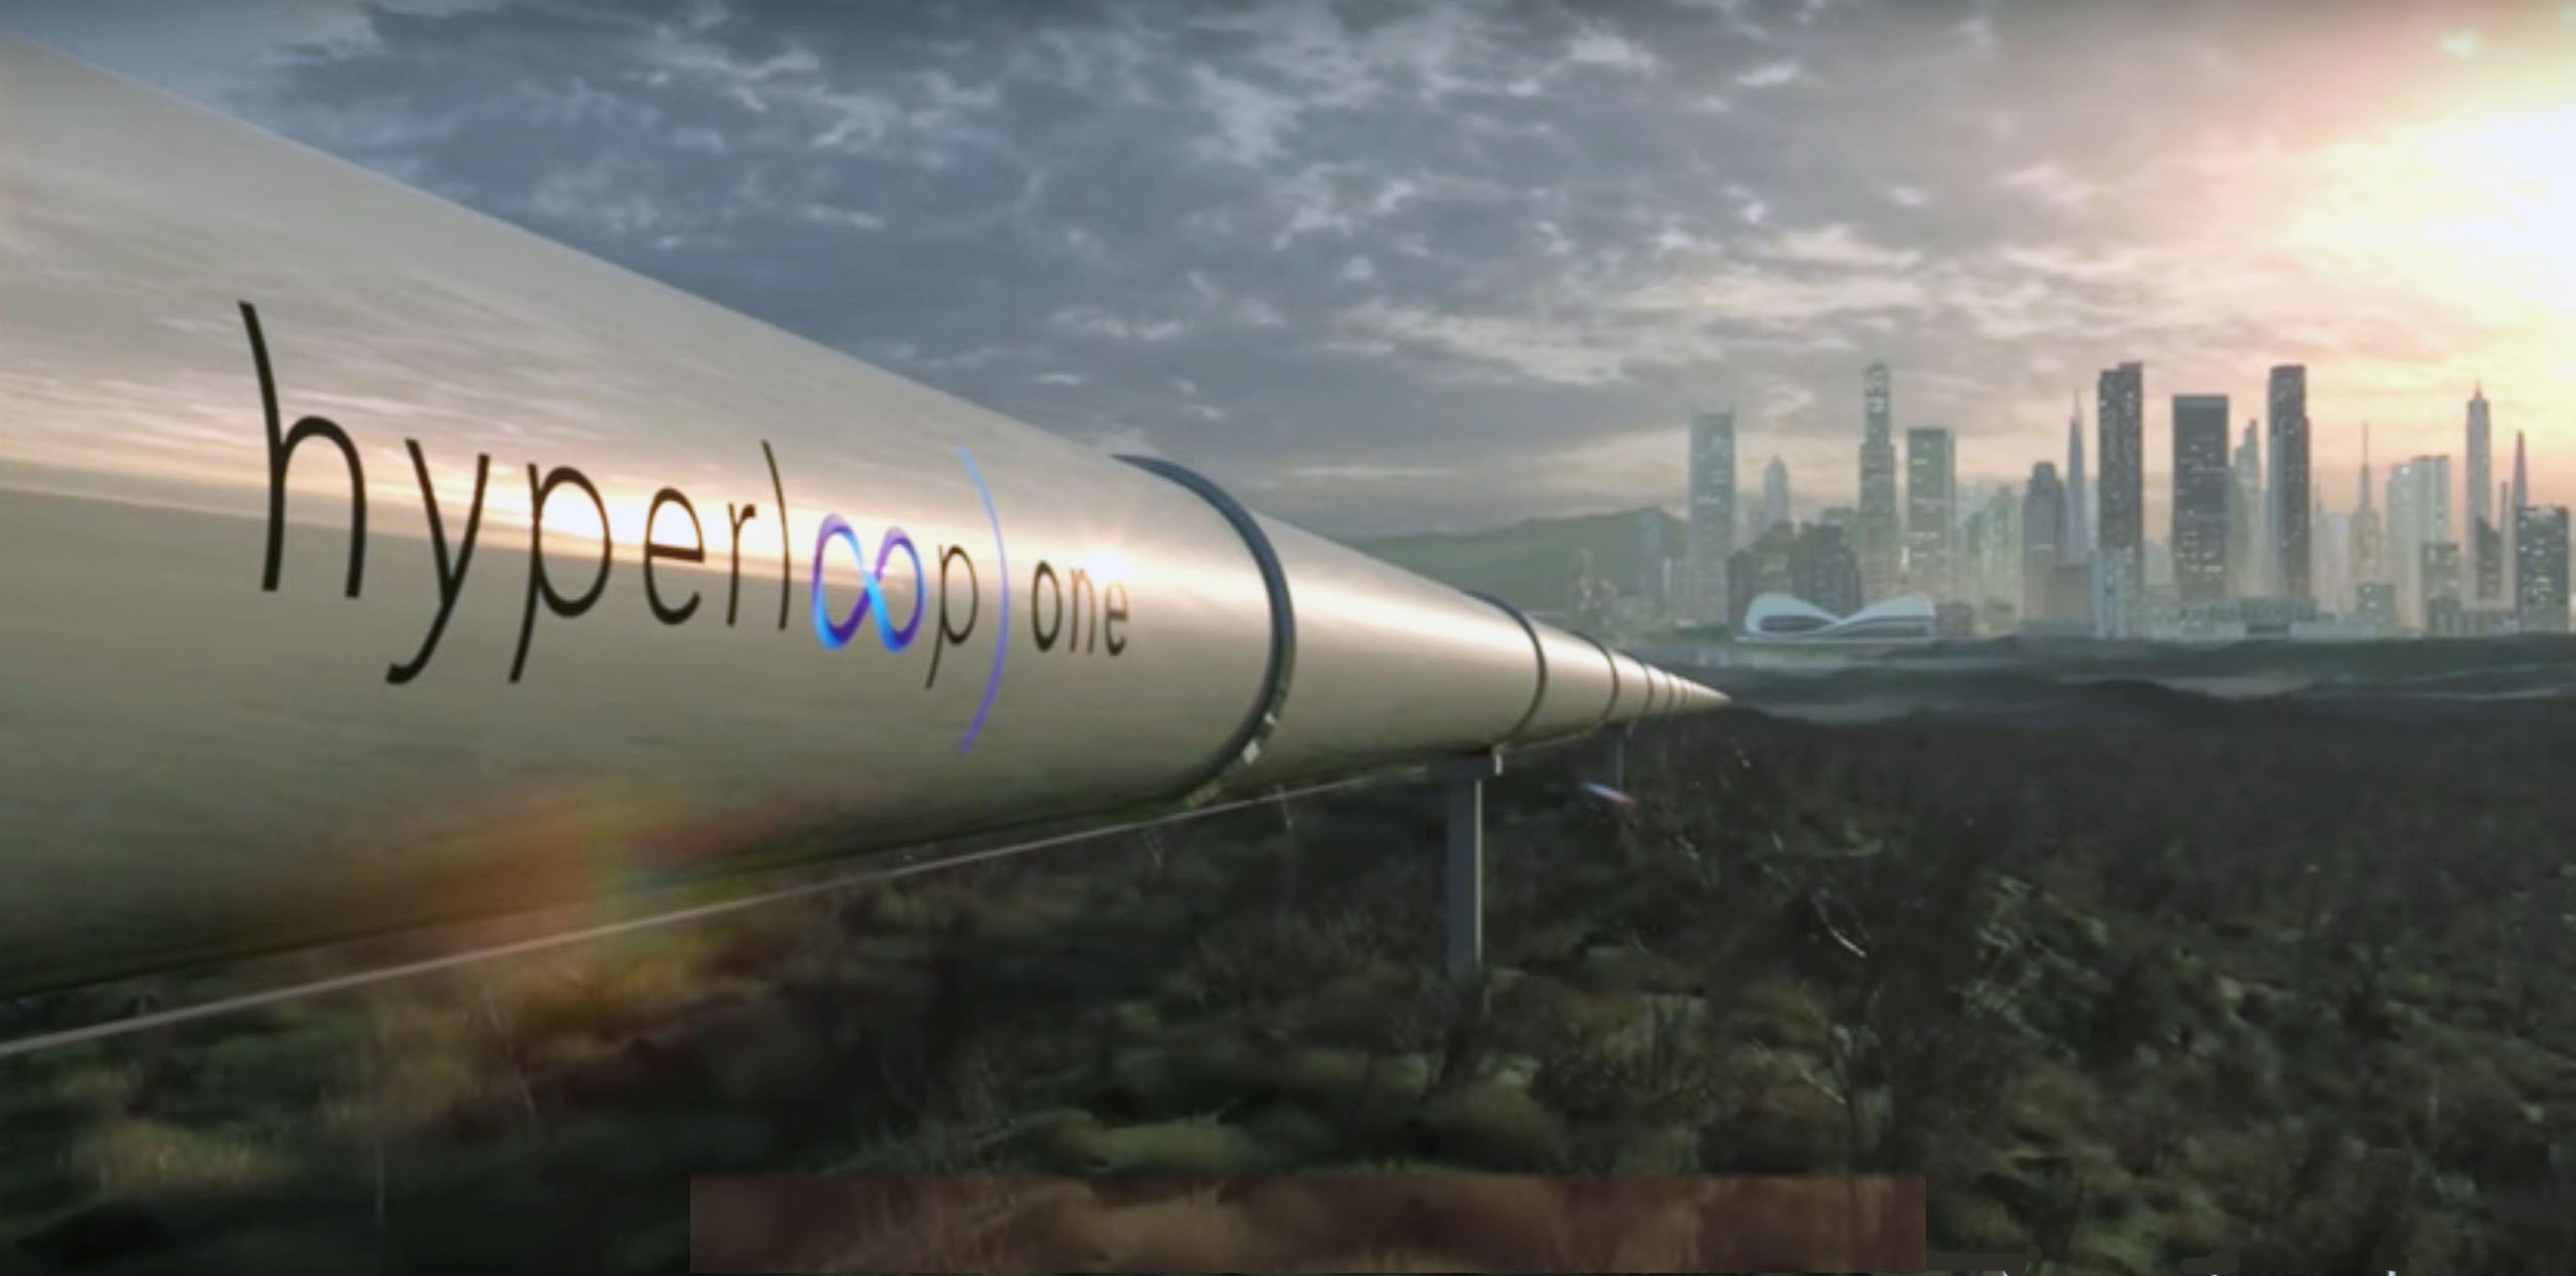 Detalles de Hyperloop